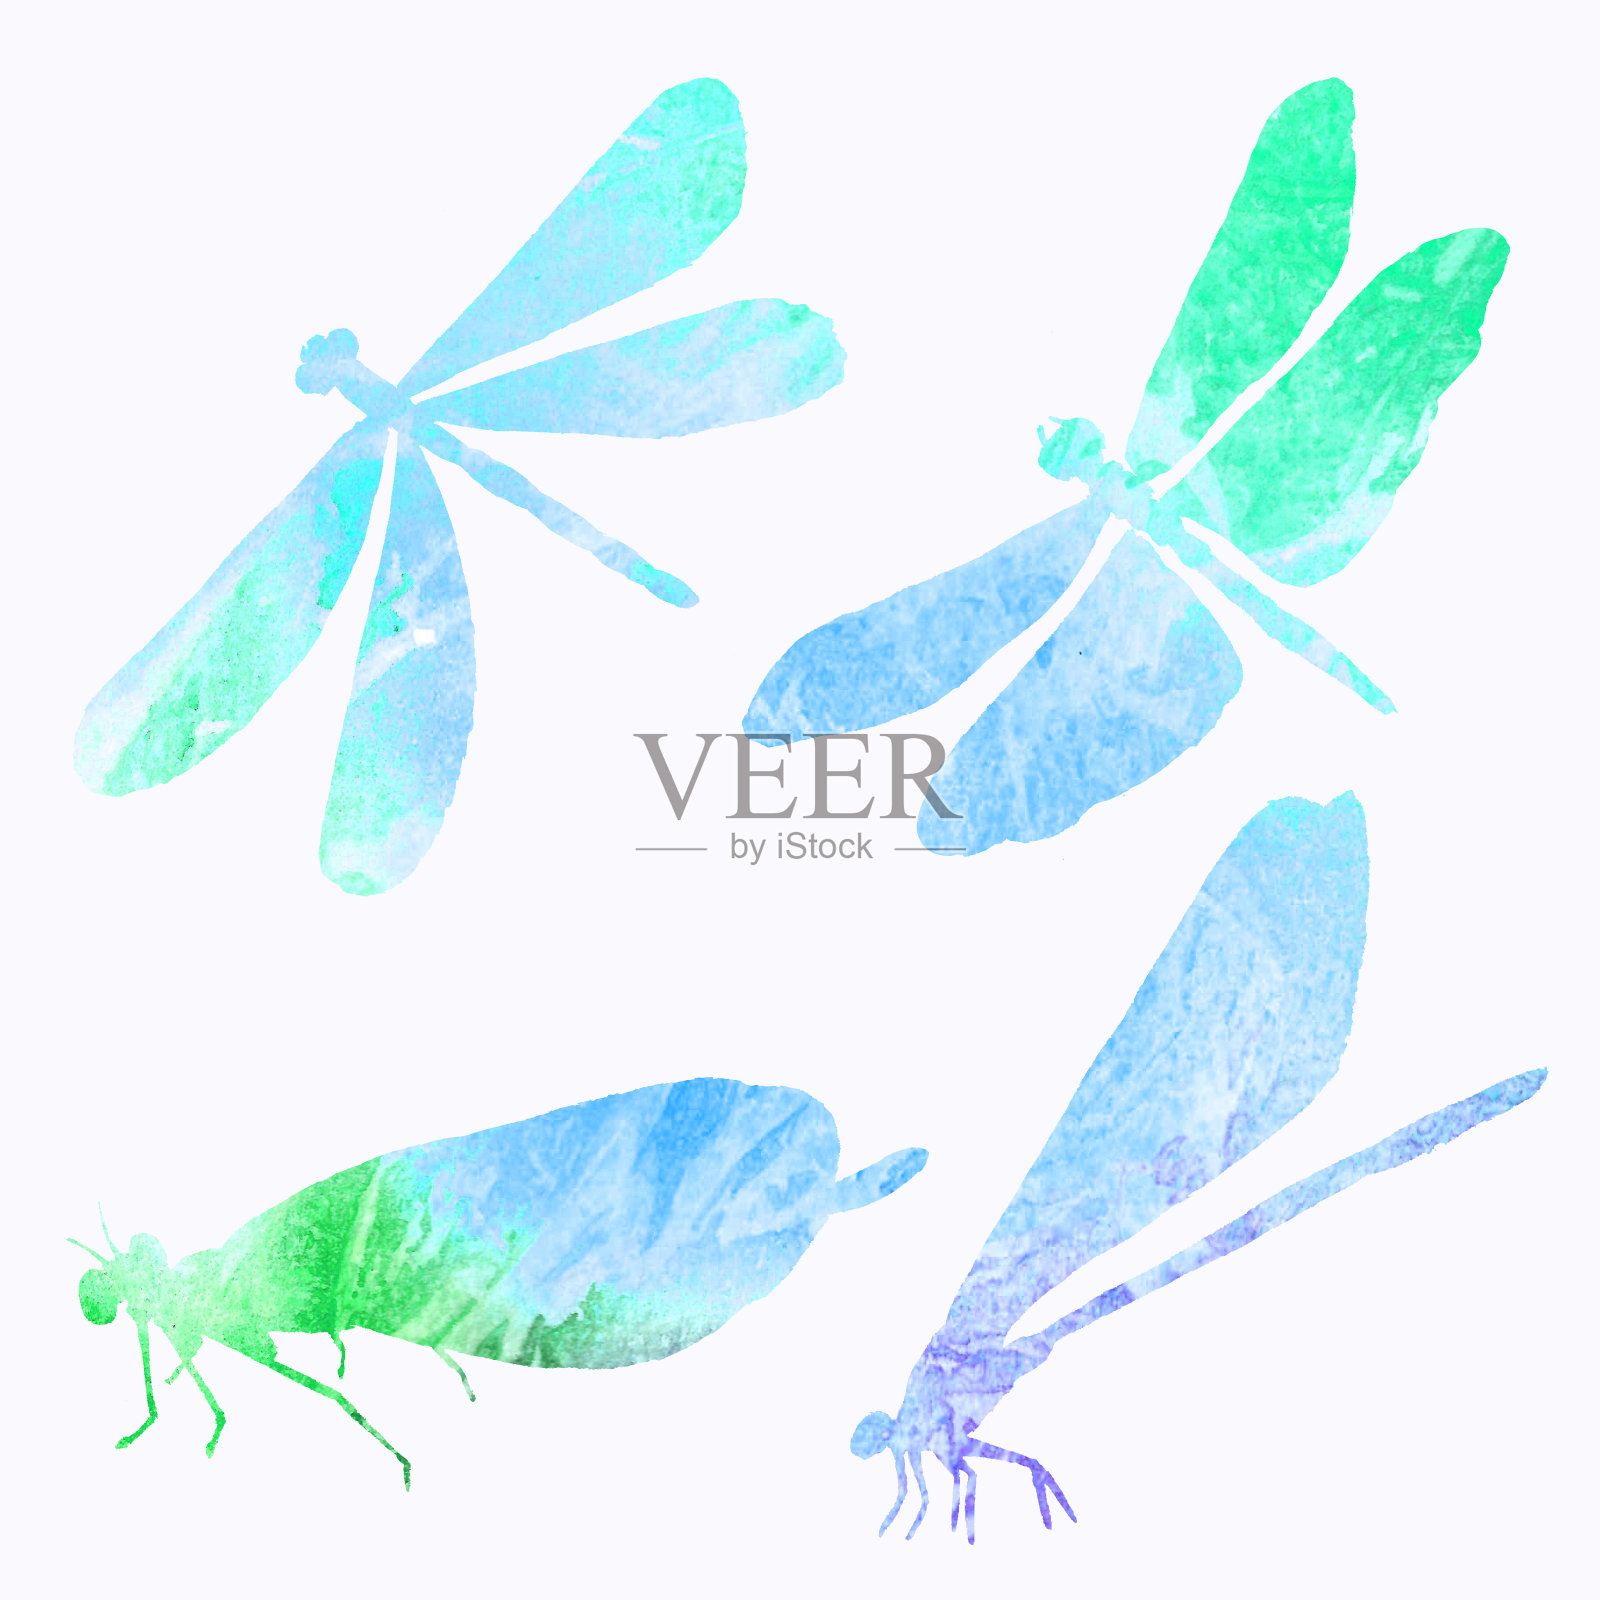 水彩画中一只蓝色蜻蜓剪影的抽象集合。插画图片素材